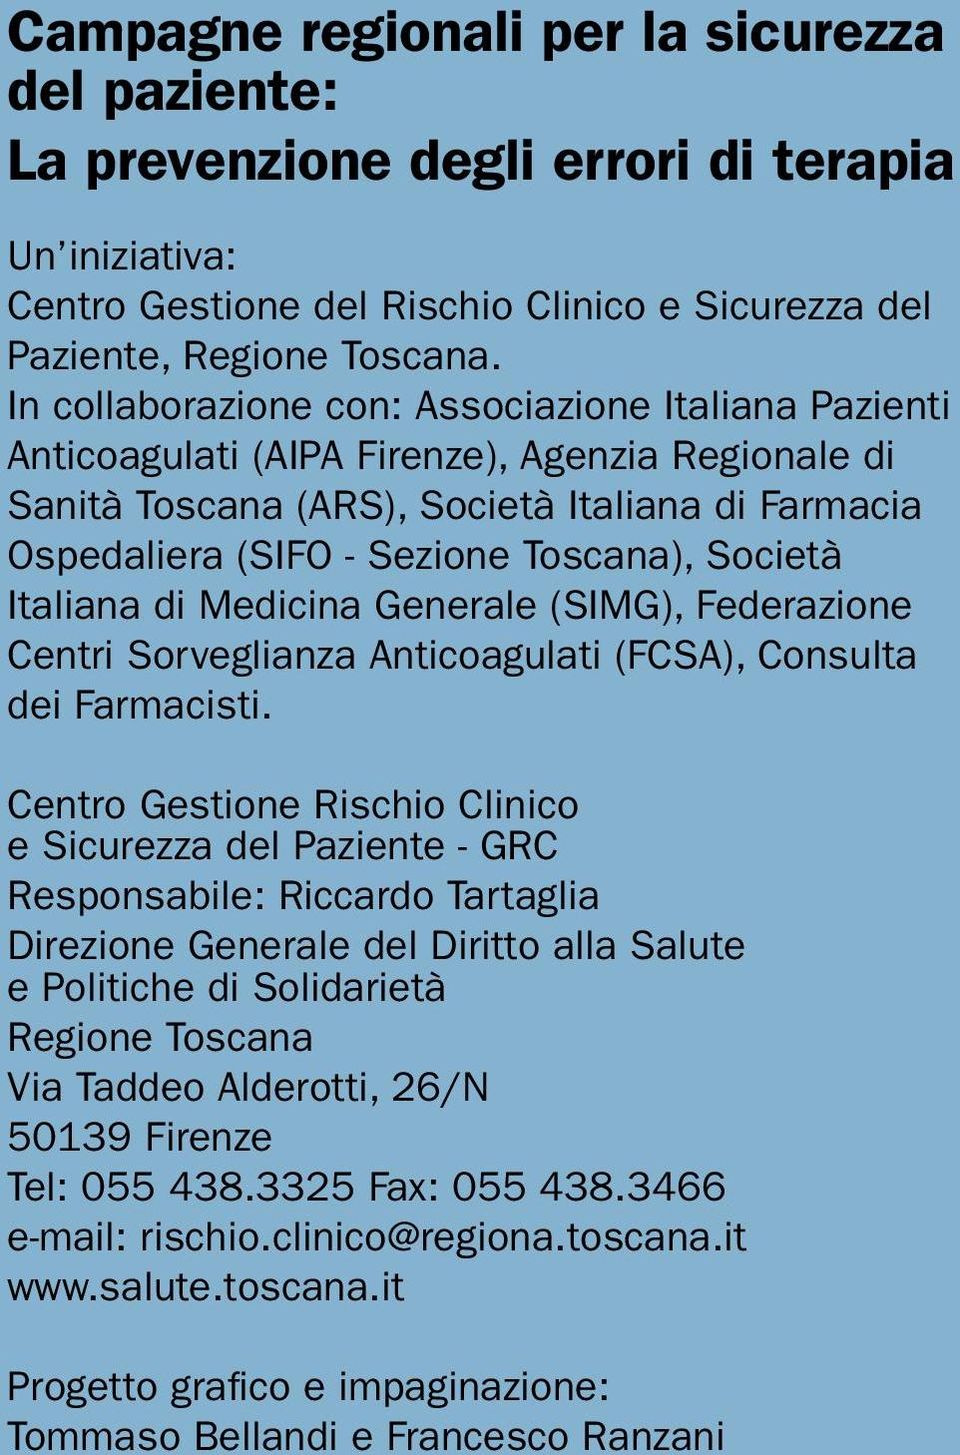 Società Italiana di Medicina Generale (SIMG), Federazione Centri Sorveglianza Anticoagulati (FCSA), Consulta dei Farmacisti.